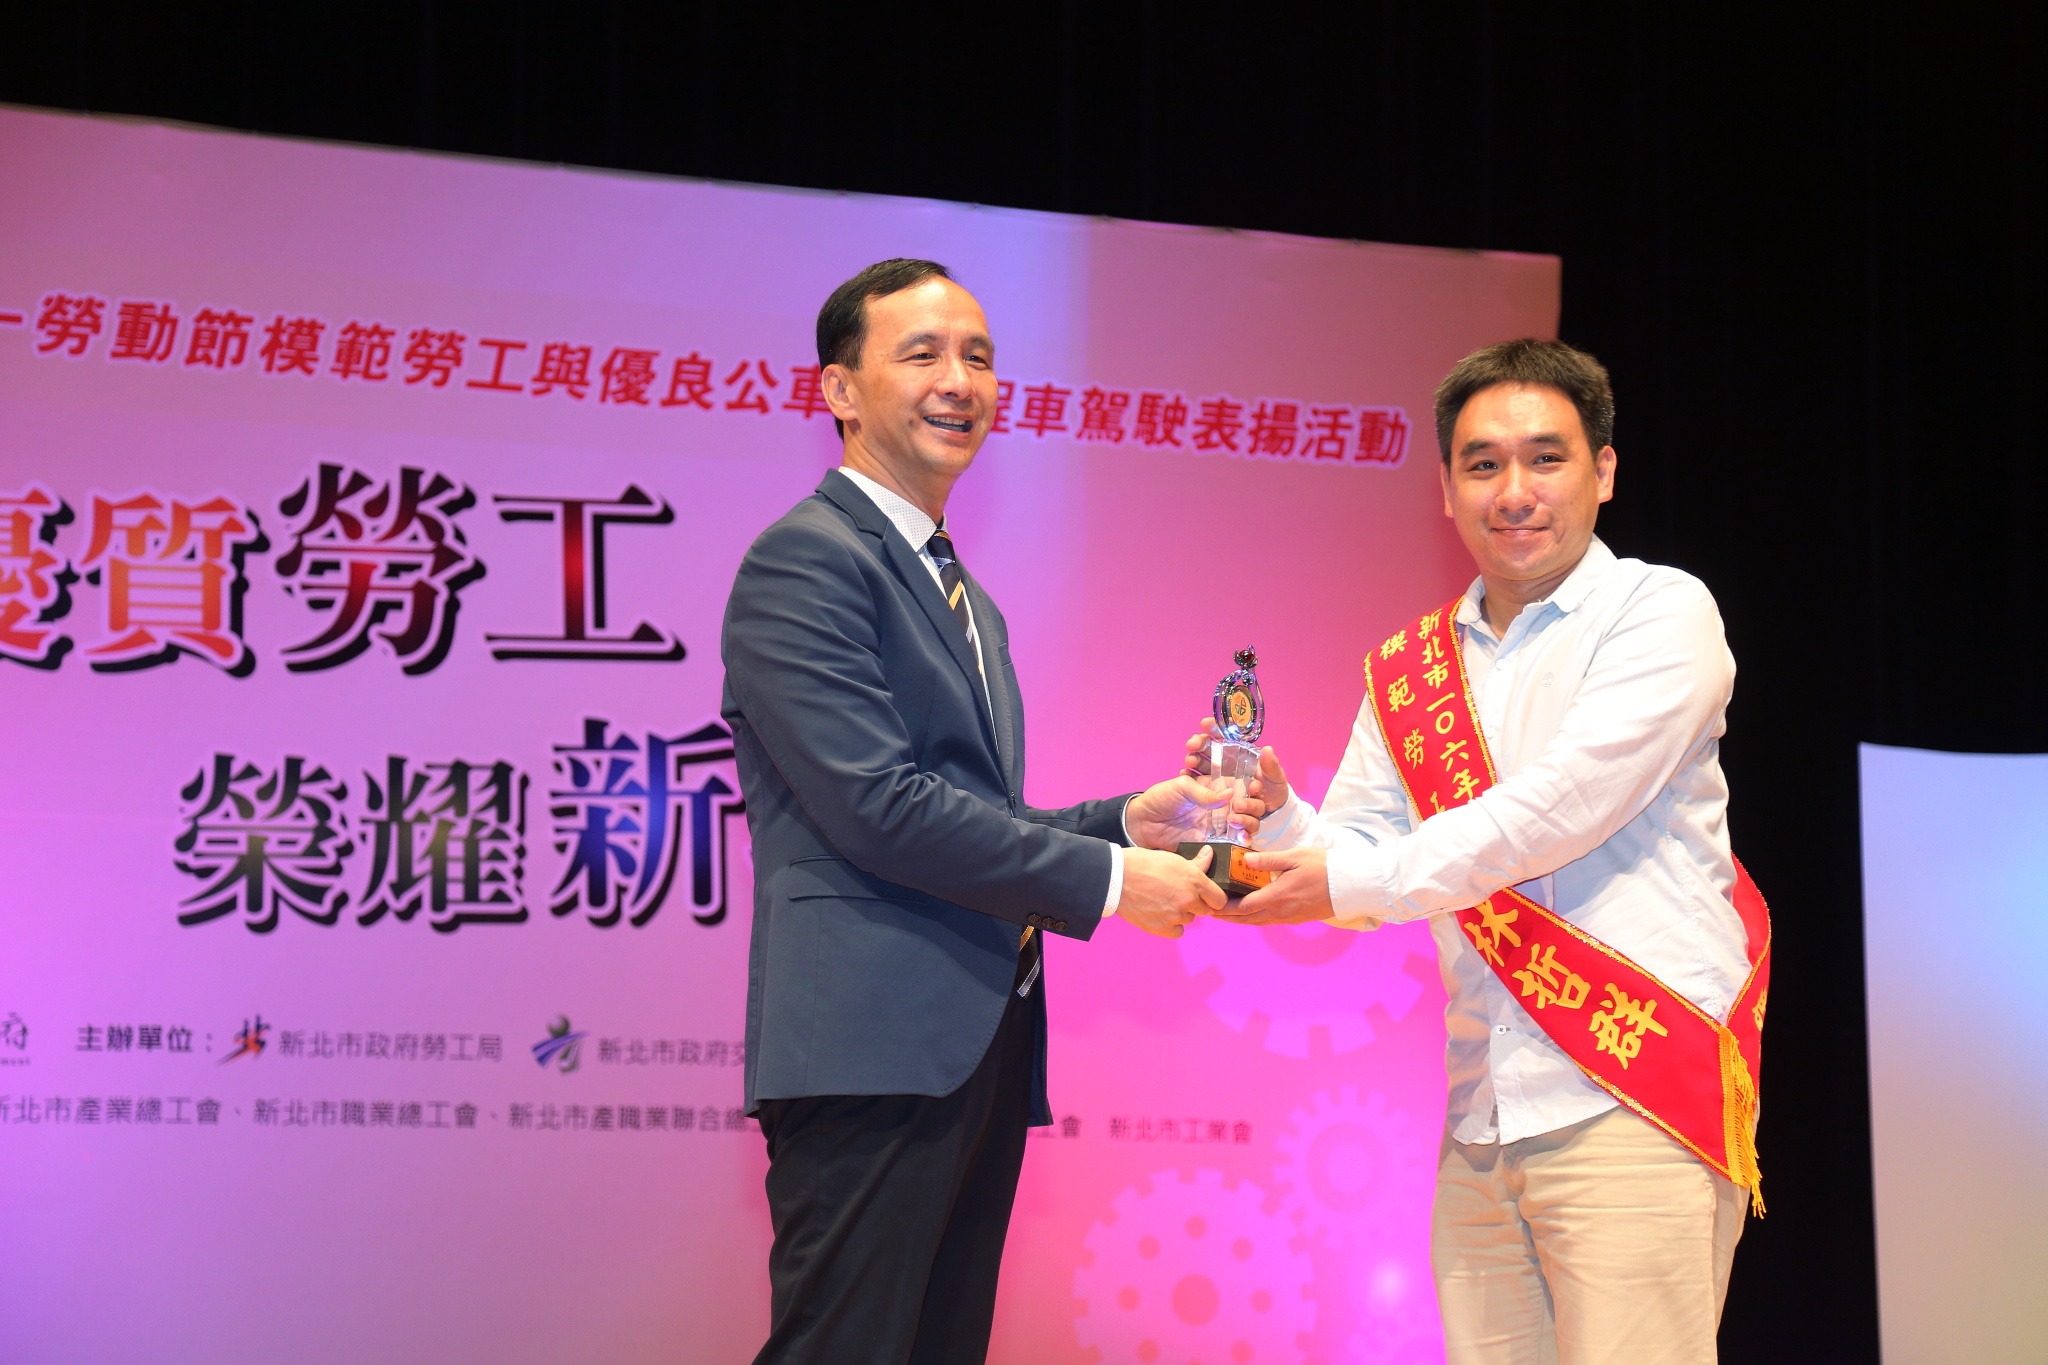 慶祝五一勞動節朱市長頒獎表揚模範勞工